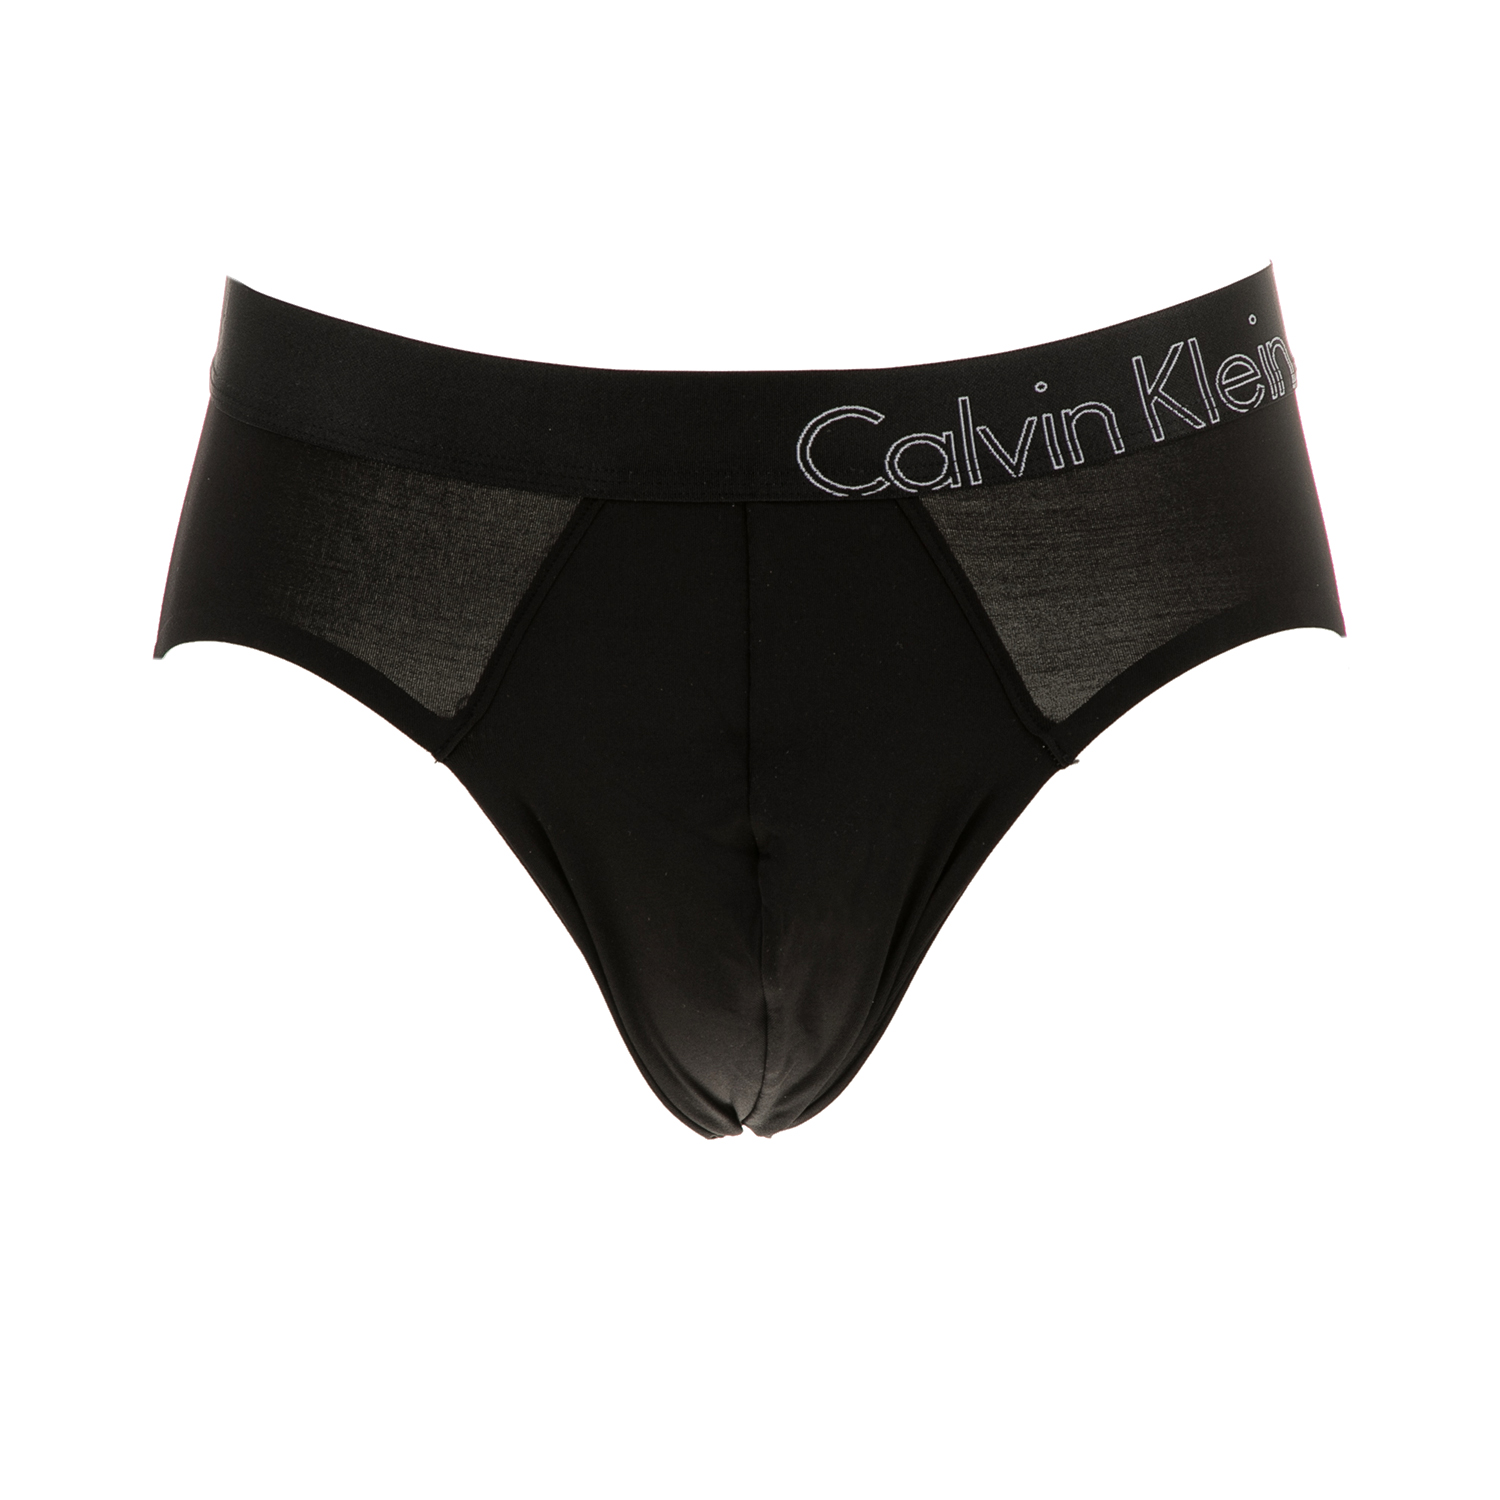 CK UNDERWEAR Ανδρικό εσώρουχο σλιπ CK Underwear μαύρο